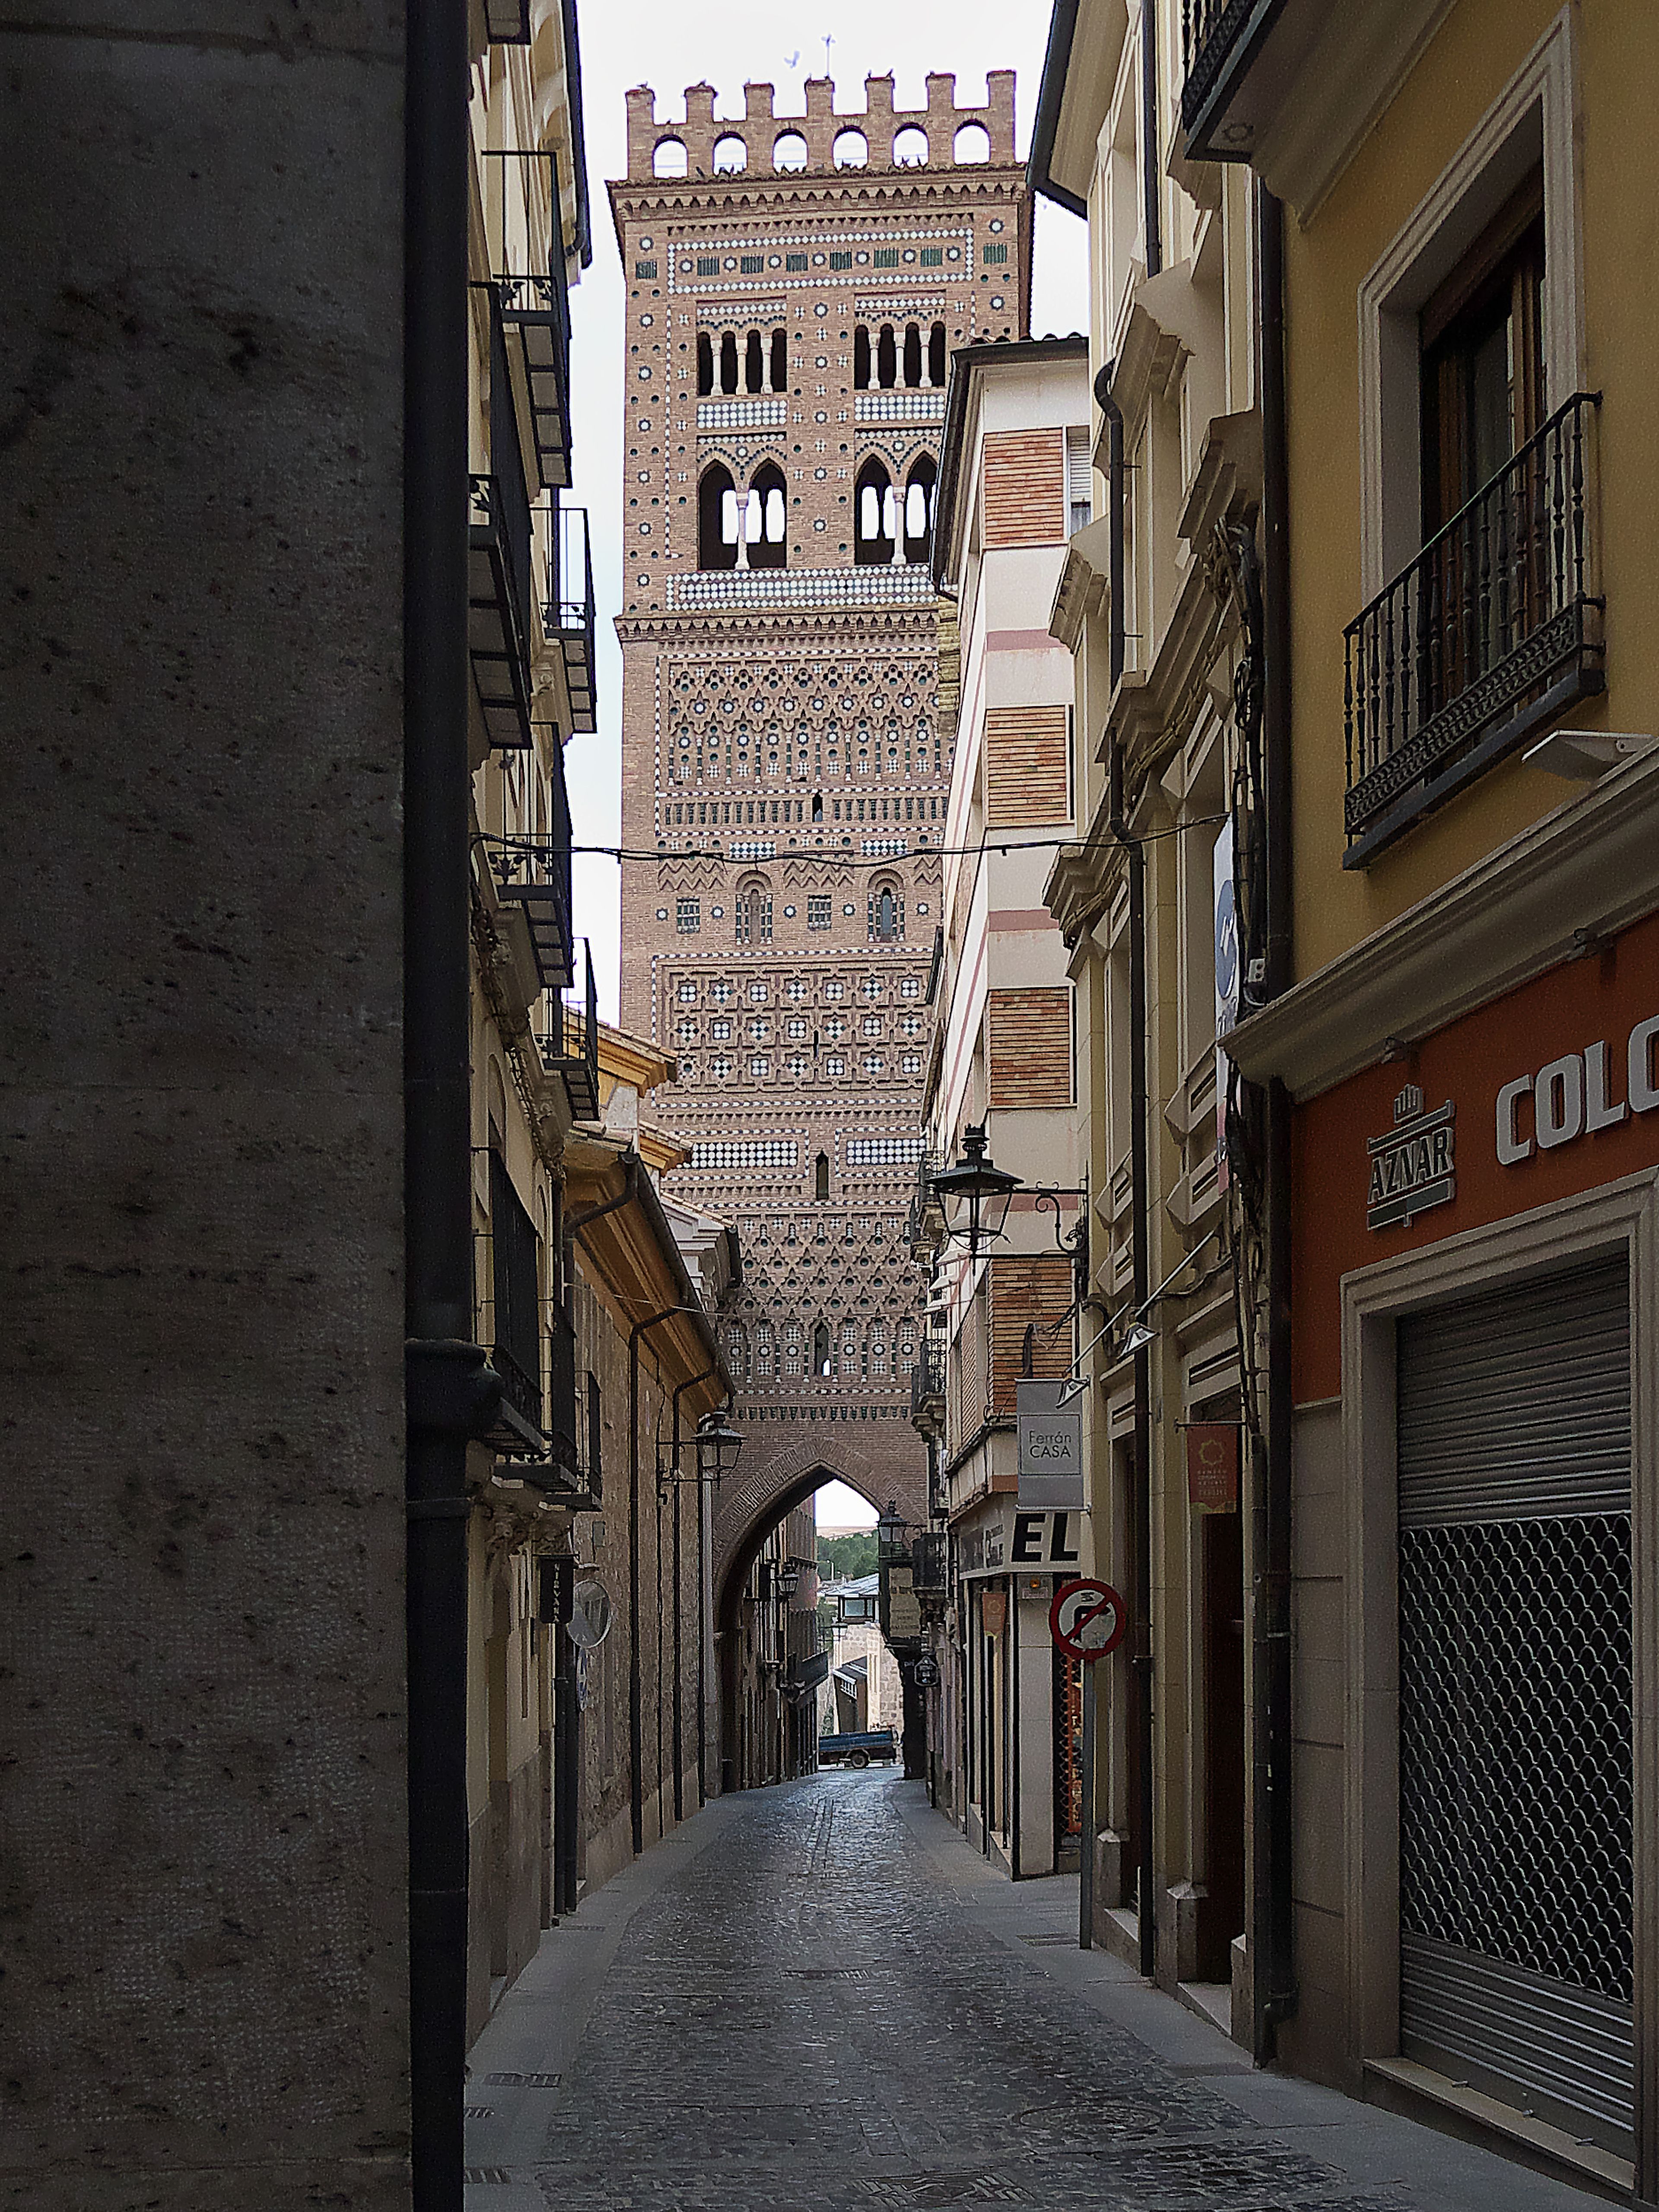 Calle El Salvador, Teruel.